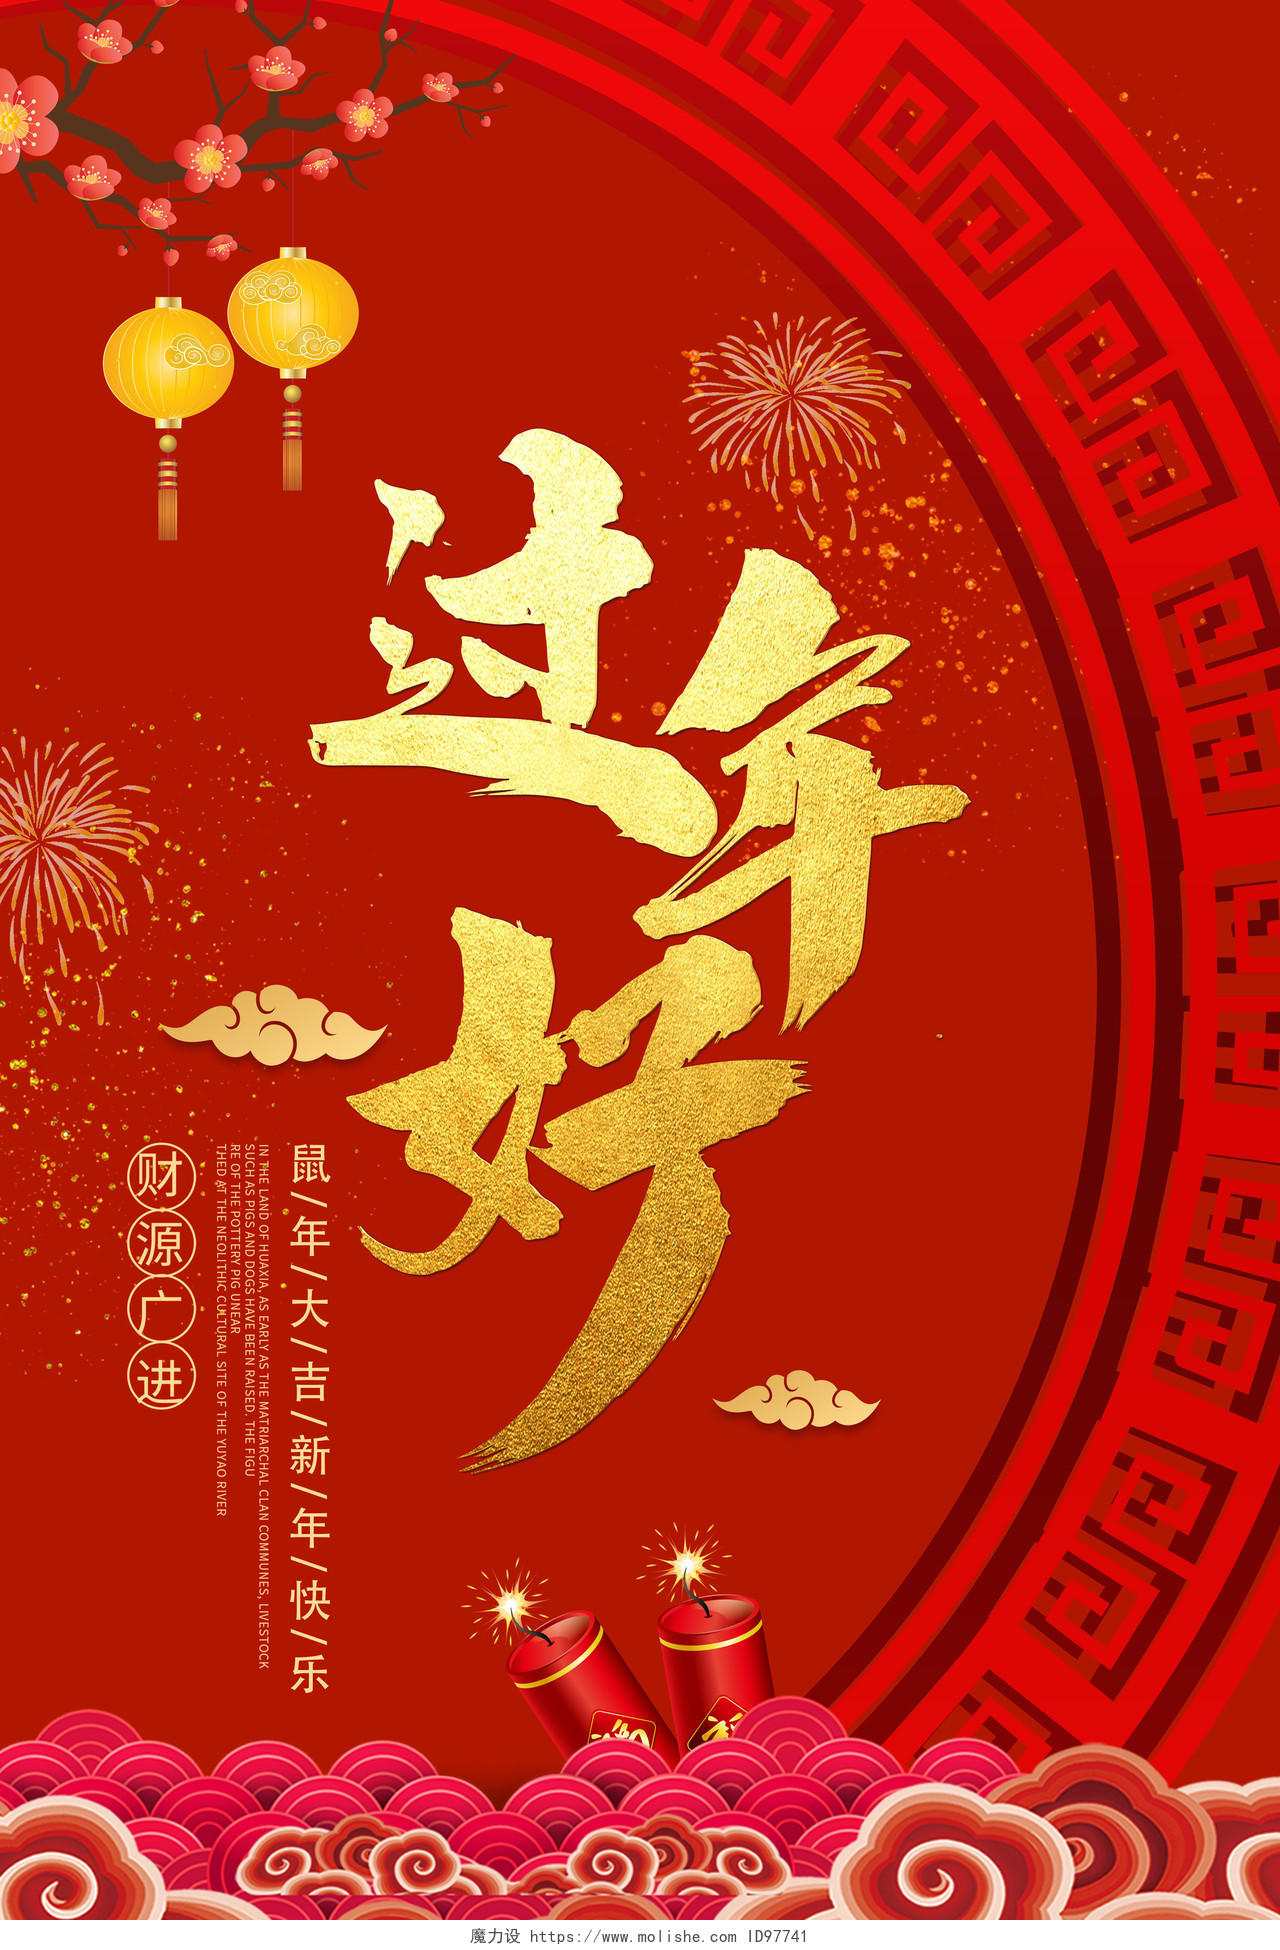 中国风创意大气2020新年鼠年大吉过年好节日海报